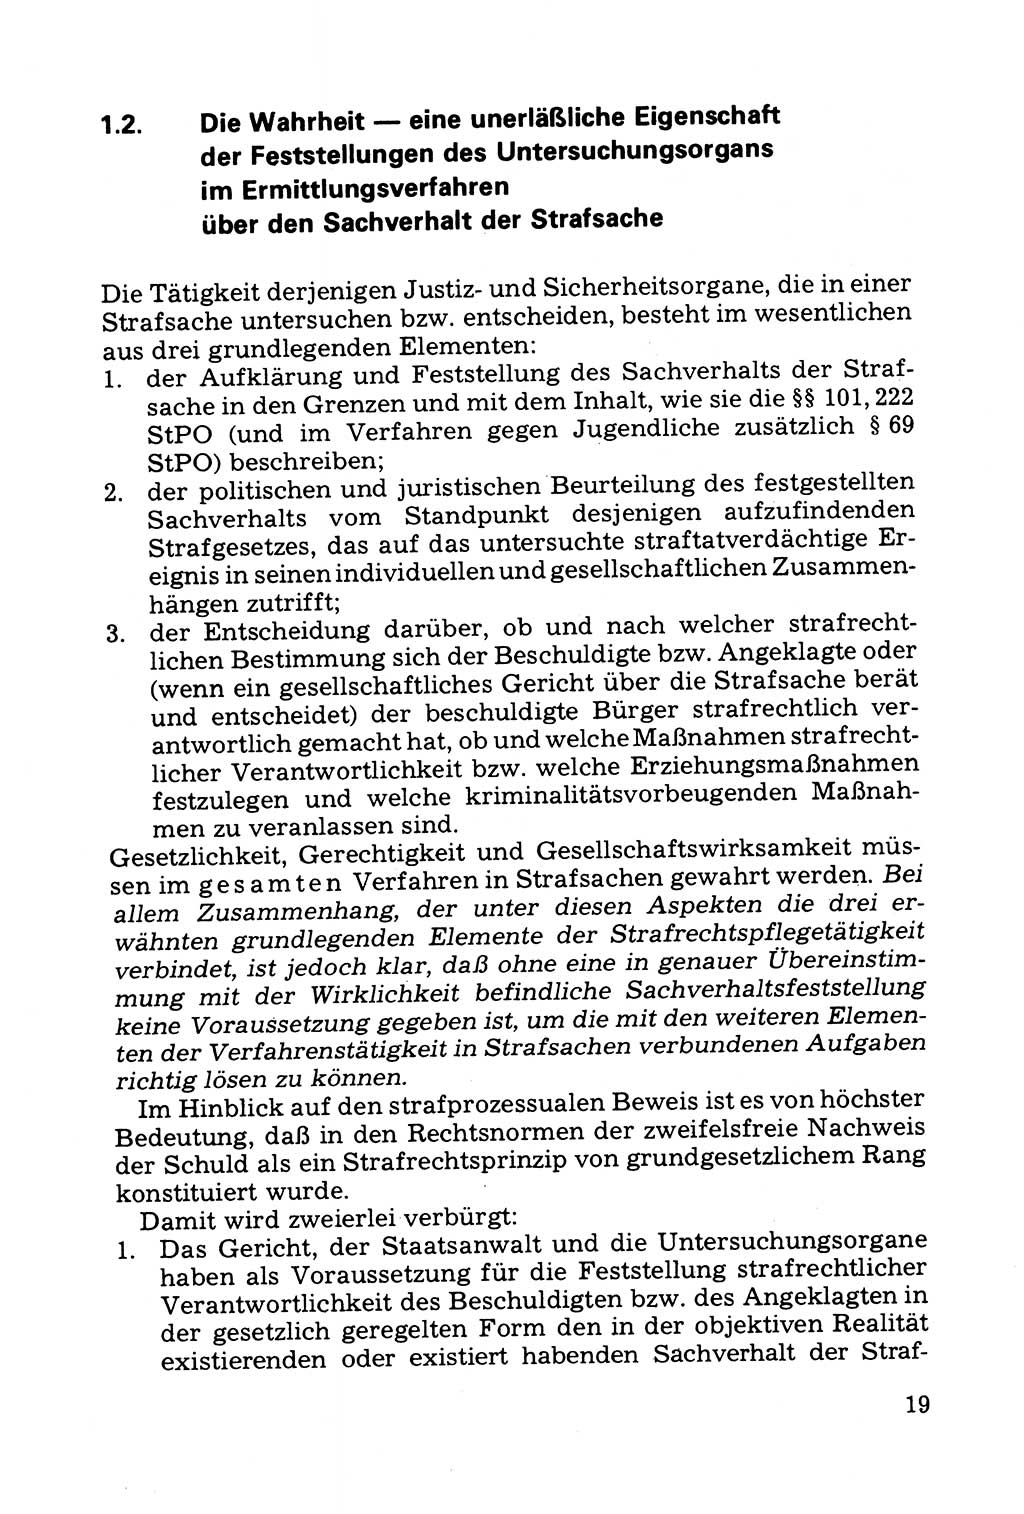 Grundfragen der Beweisführung im Ermittlungsverfahren [Deutsche Demokratische Republik (DDR)] 1980, Seite 19 (Bws.-Fhrg. EV DDR 1980, S. 19)